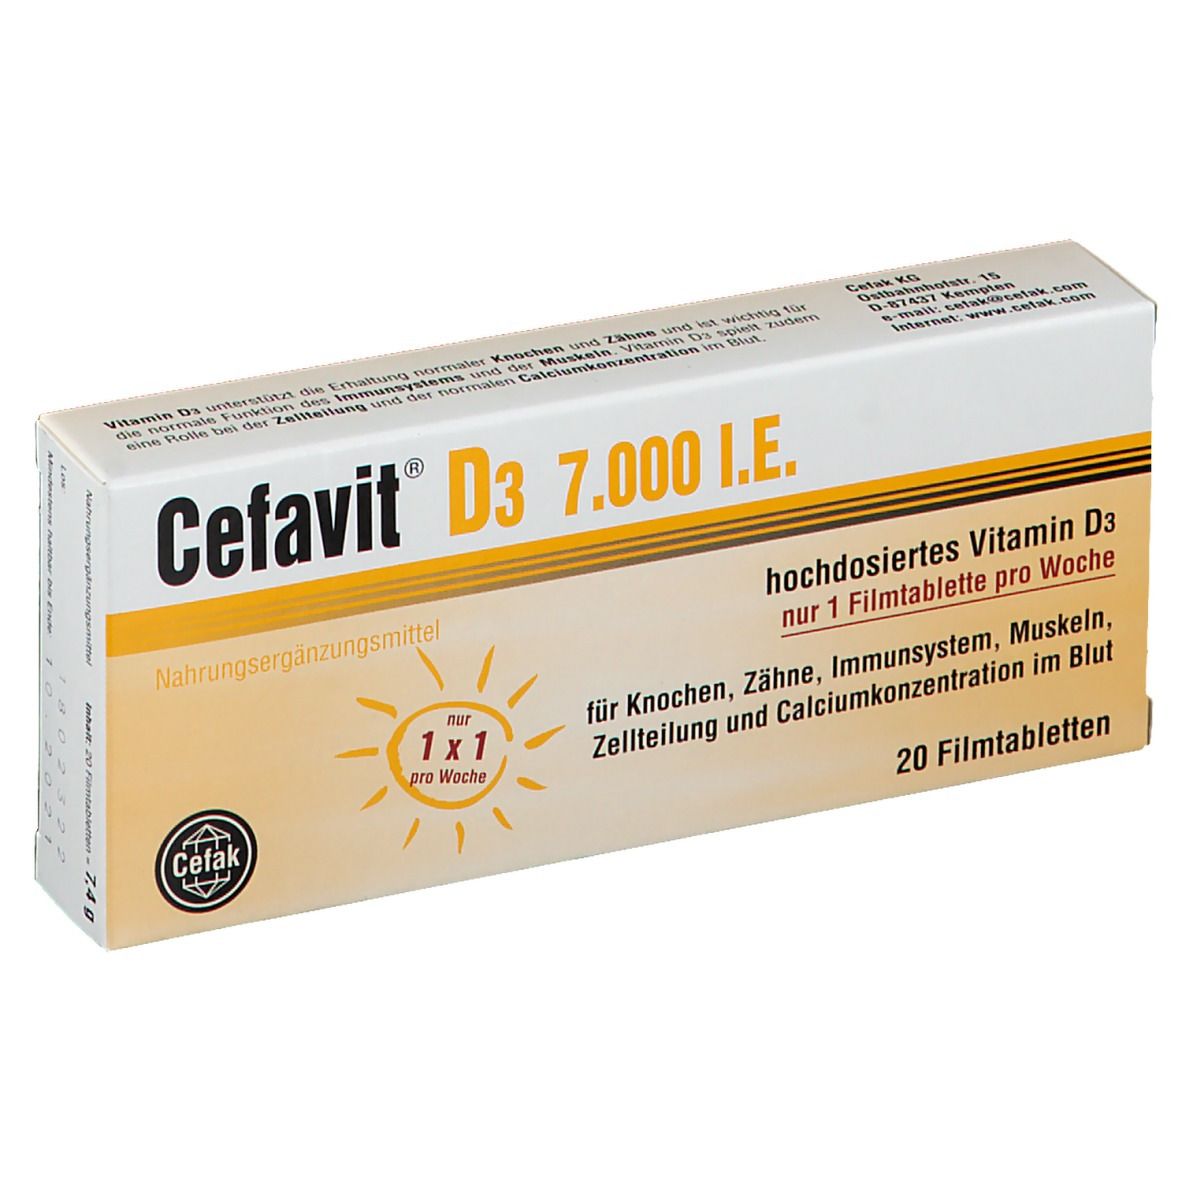 Cefavit® D3 7.000 I.E.